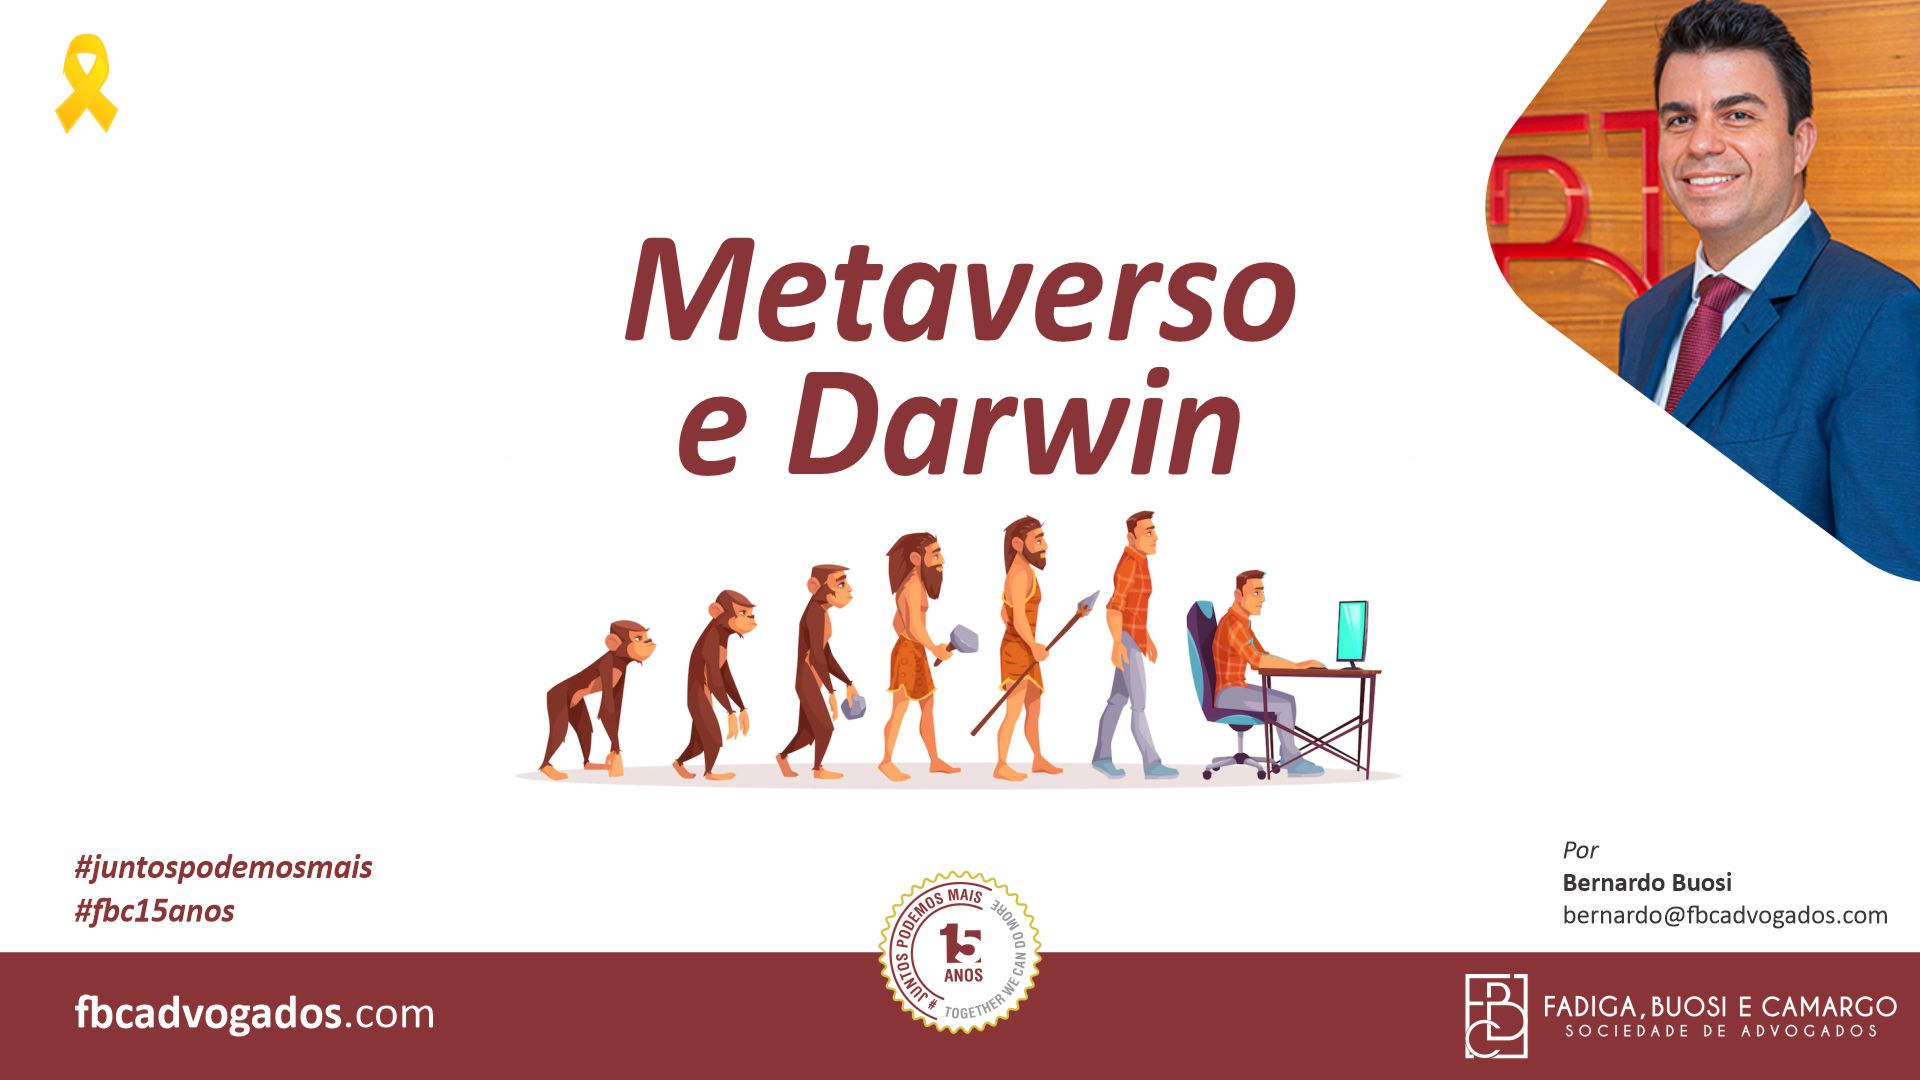 Metaverso e Darwin